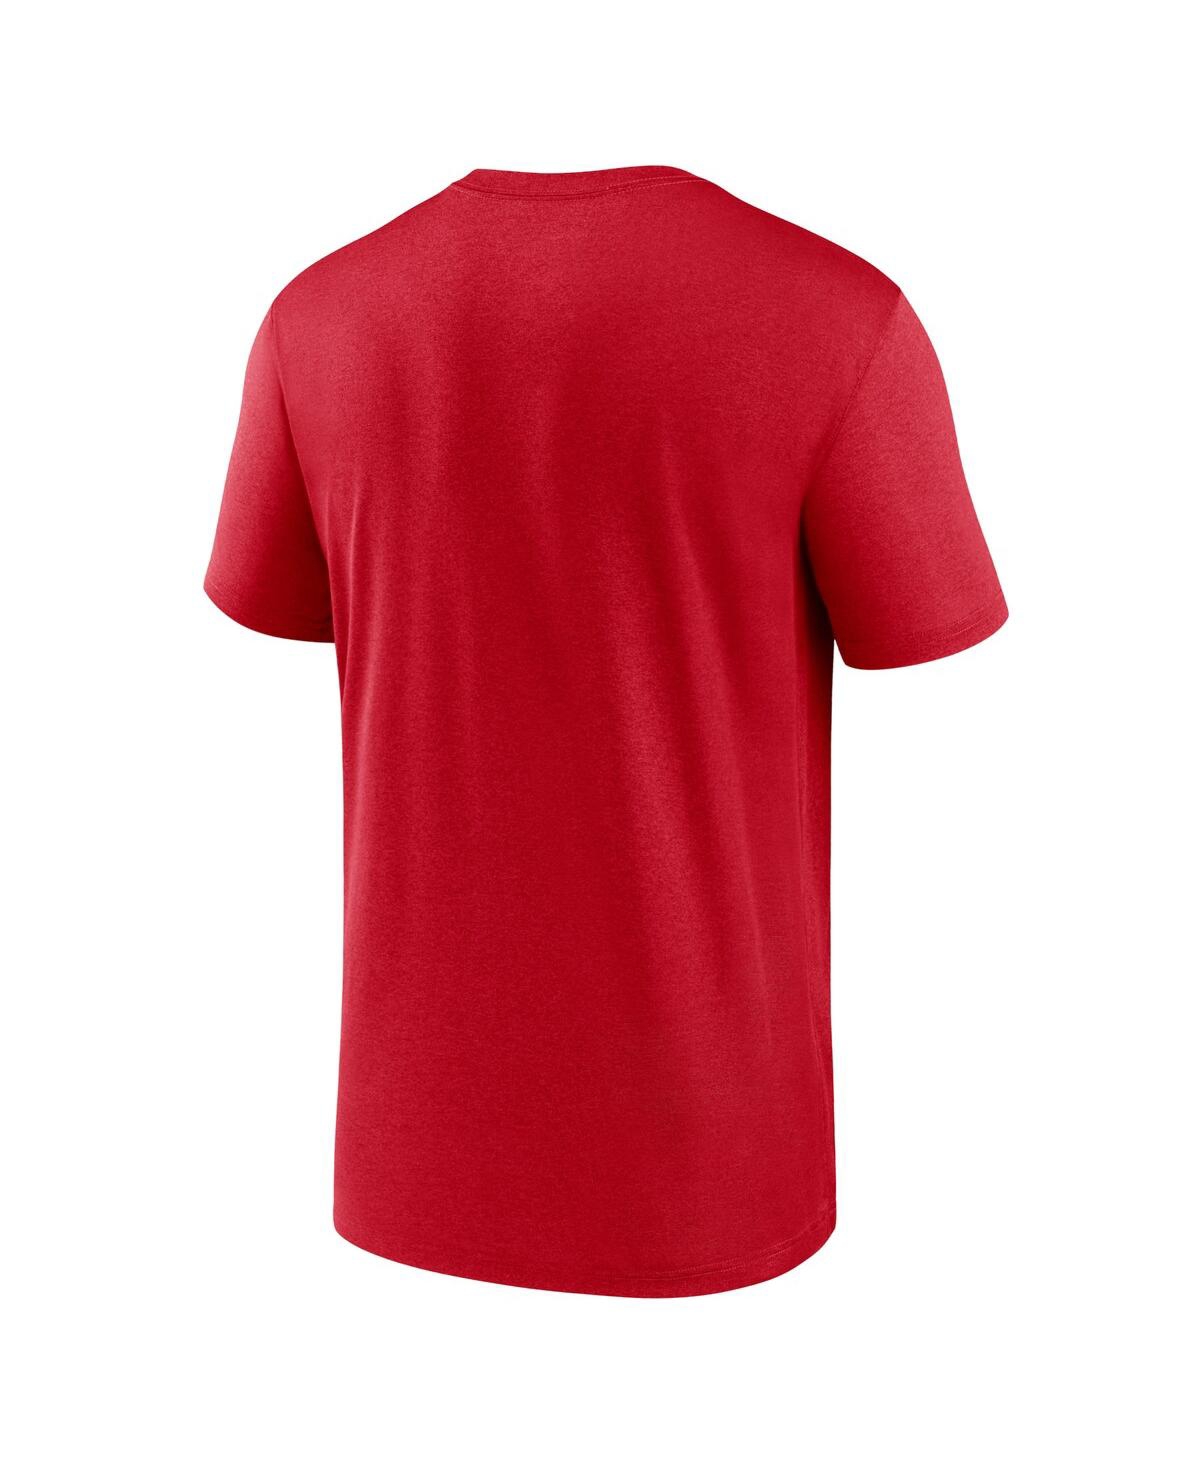 Shop Nike Men's  Red Cincinnati Reds New Legend Wordmark T-shirt